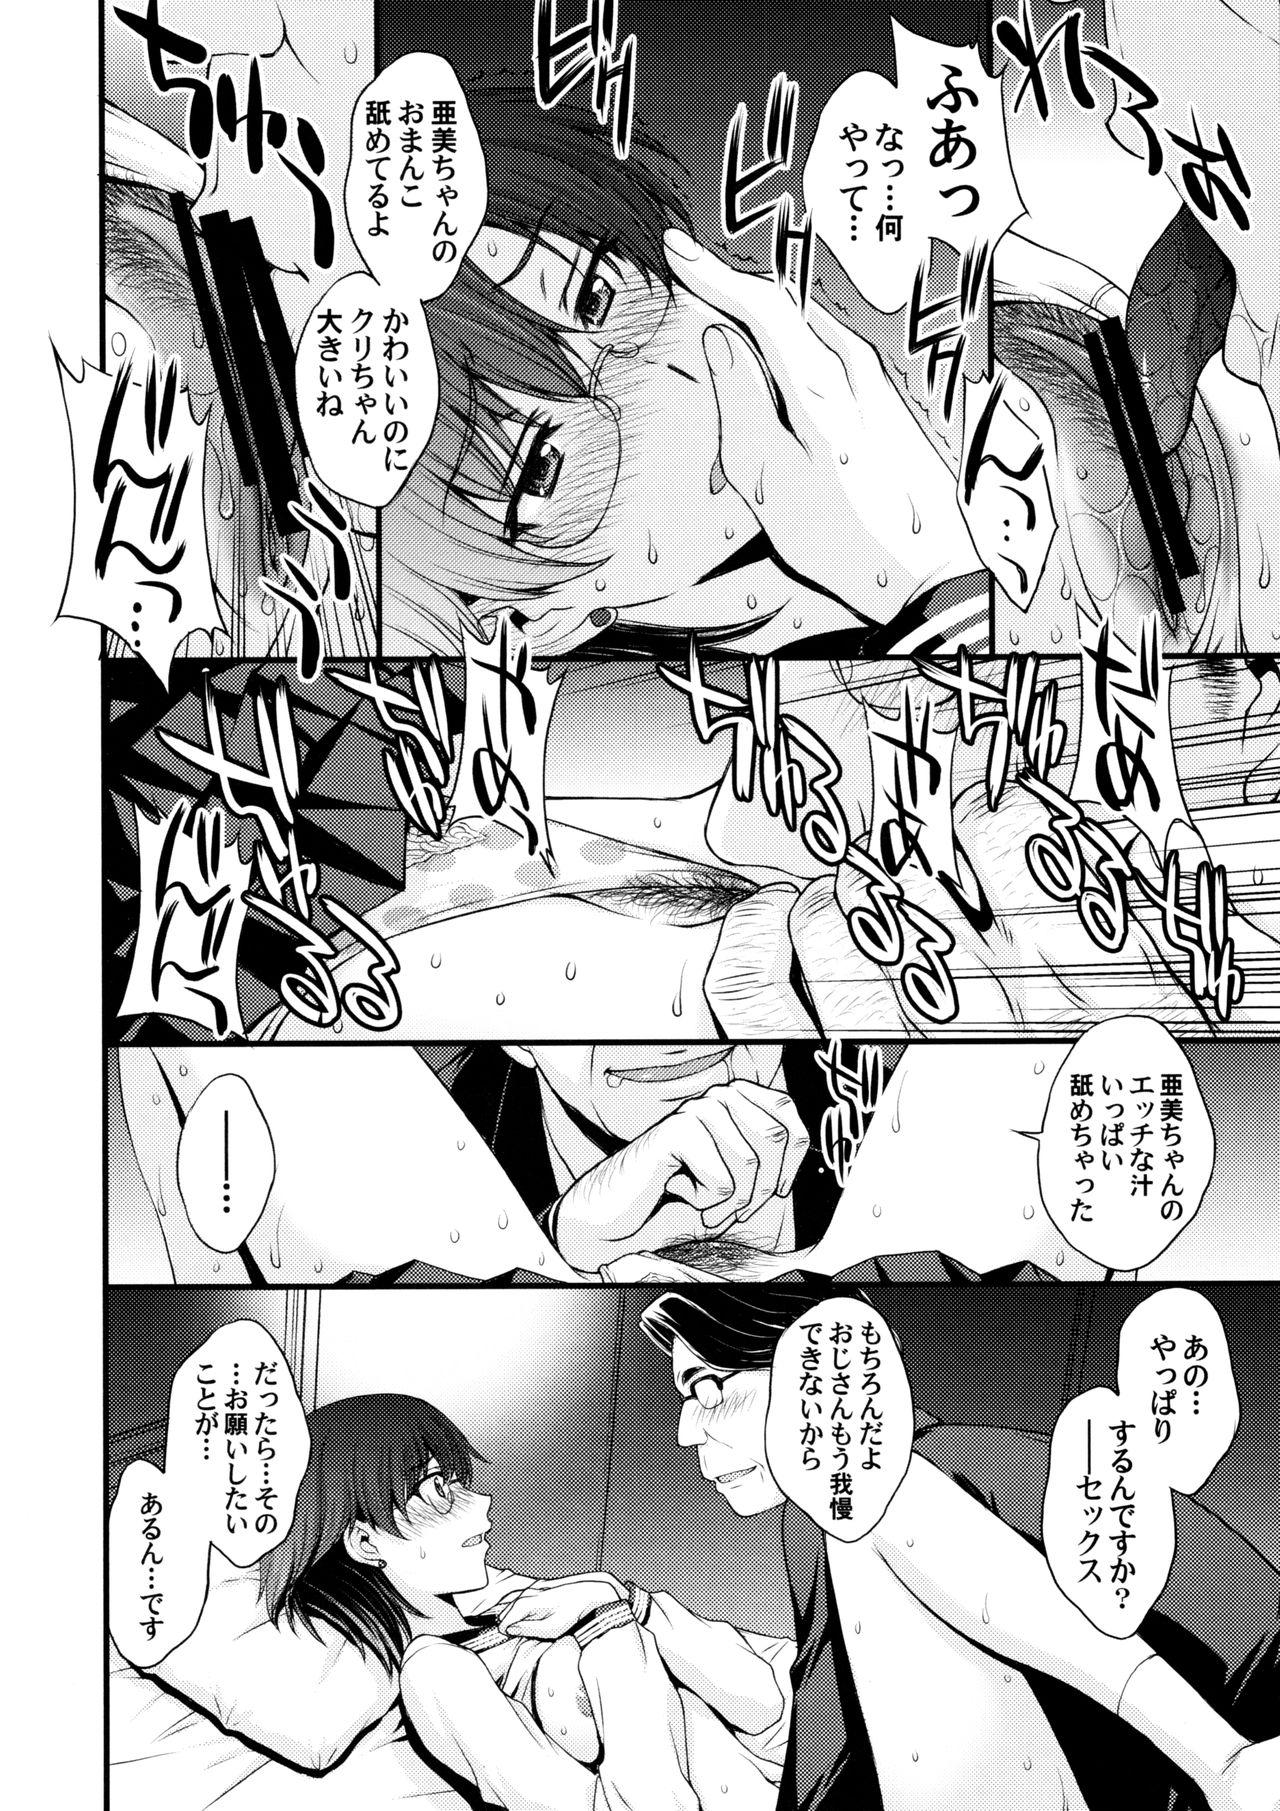 Young Mercury no shojo soushitsu de ippatsu nu kitai - Sailor moon Extreme - Page 5